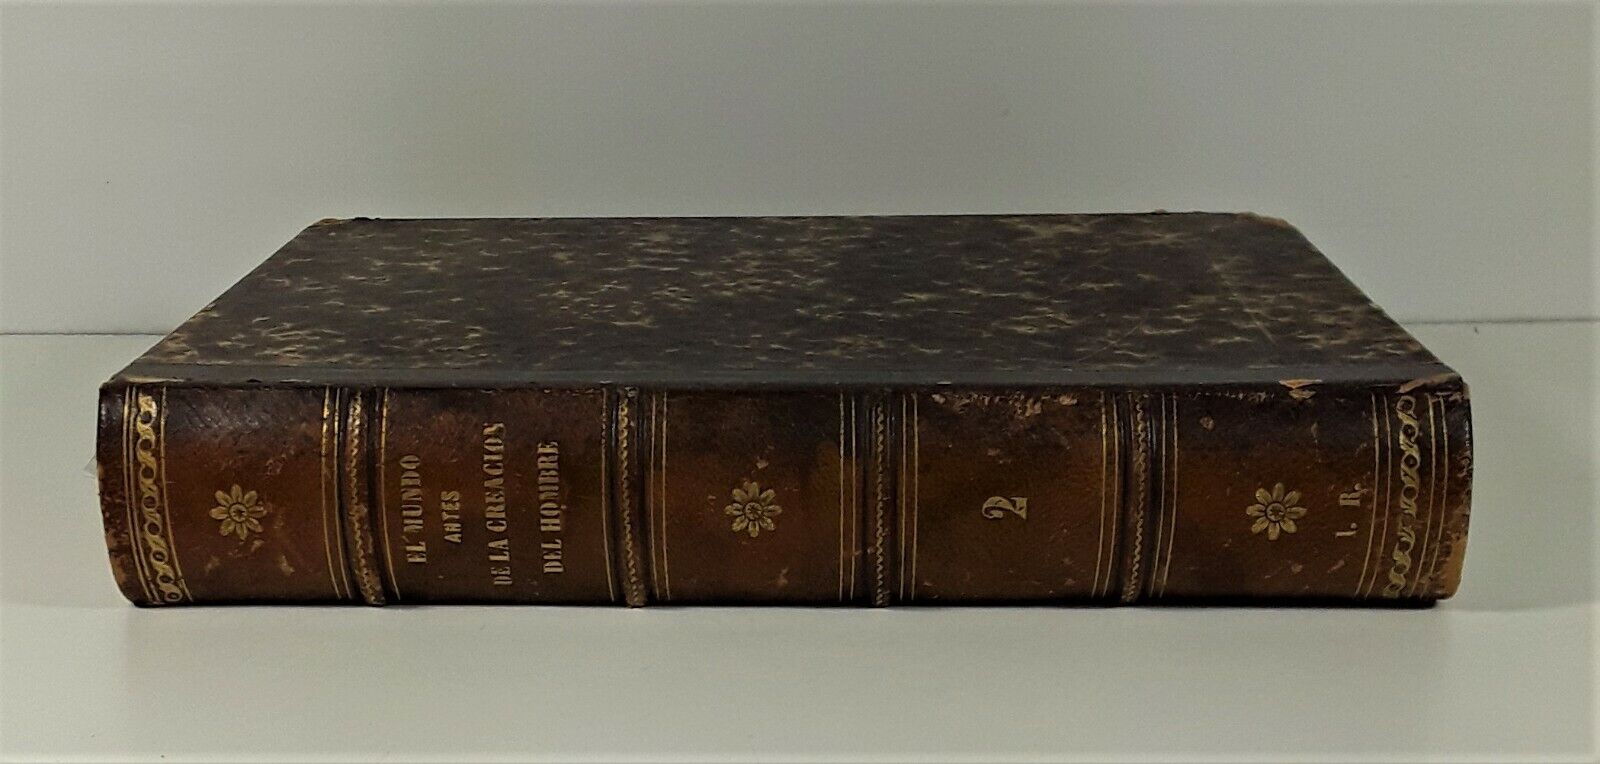 LE MONDE AVANT LA CRÉATION DE LHOMME. EDIT MONTANER ET SIMON. 1871.